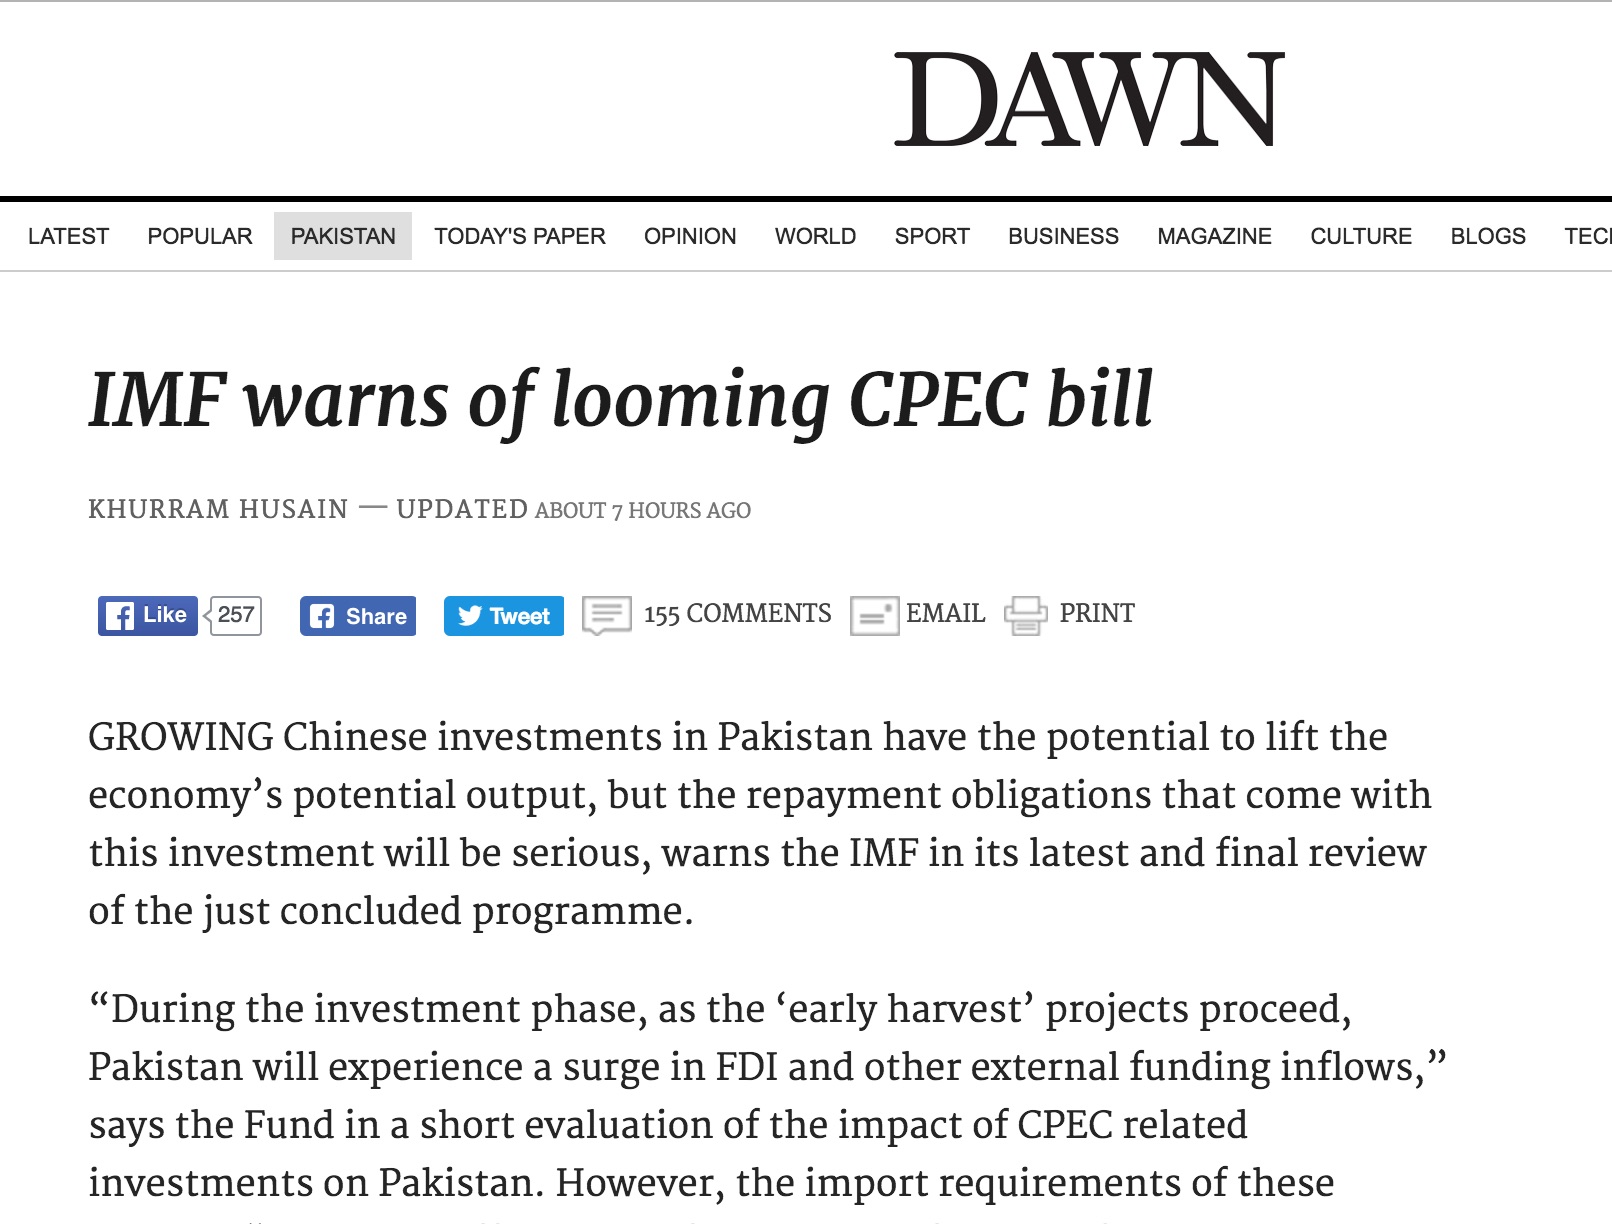 Si les investissement chinois seraient d'abord profitables à Islamabad, ce dernier devra ensuite rembourser de nombreux prêts. Copie d'écran de Dawn, le 17 octobre 2016.